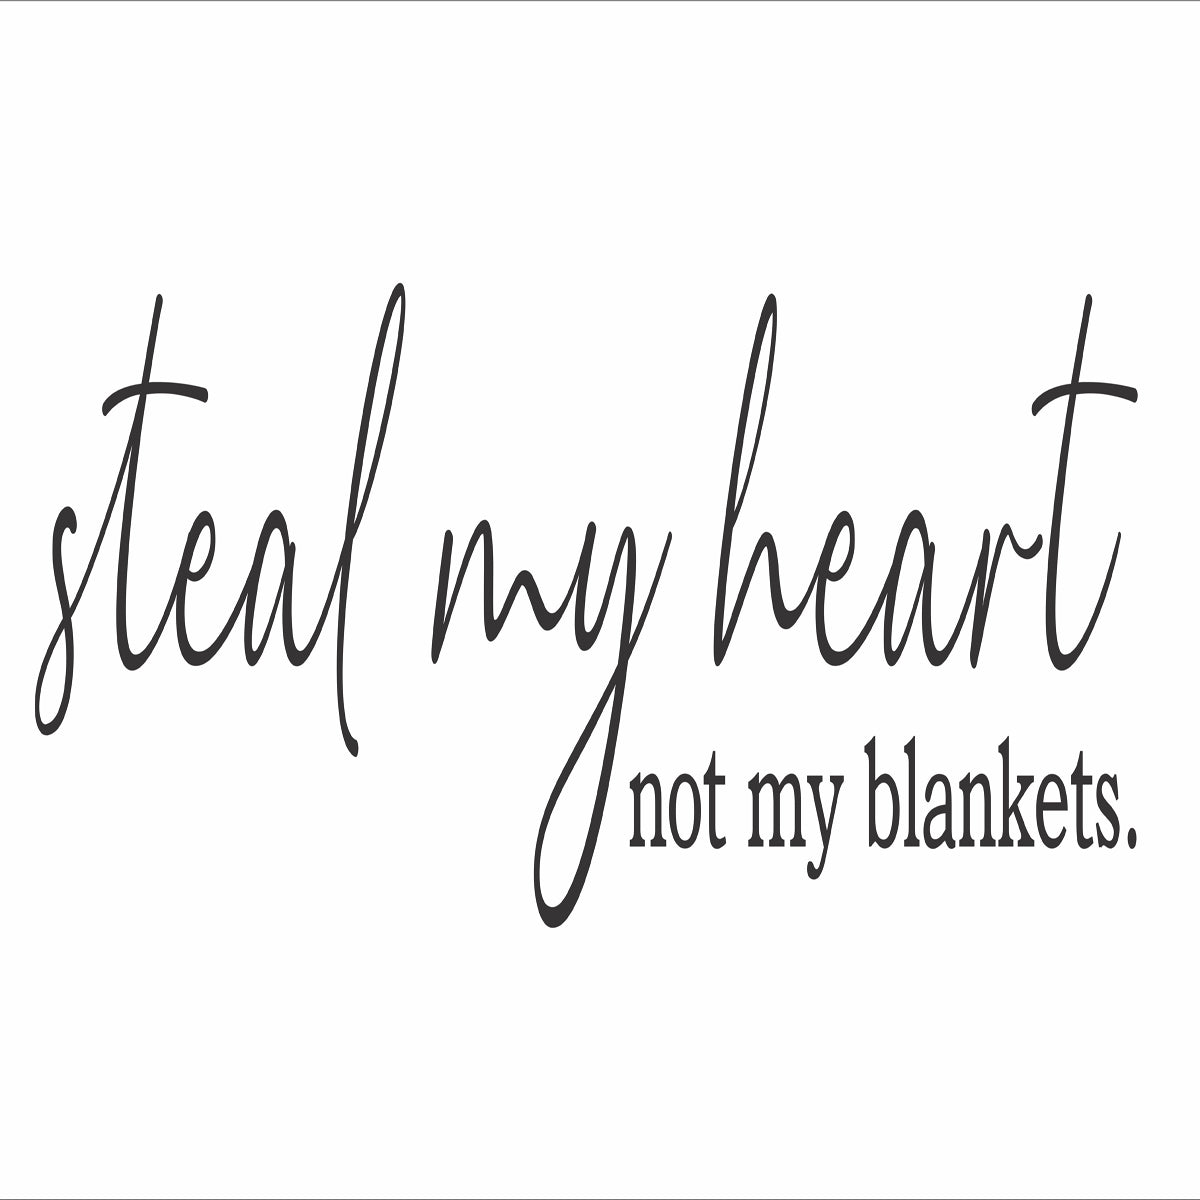 Steal my Heart not my blankets Stencil - Superior Stencils